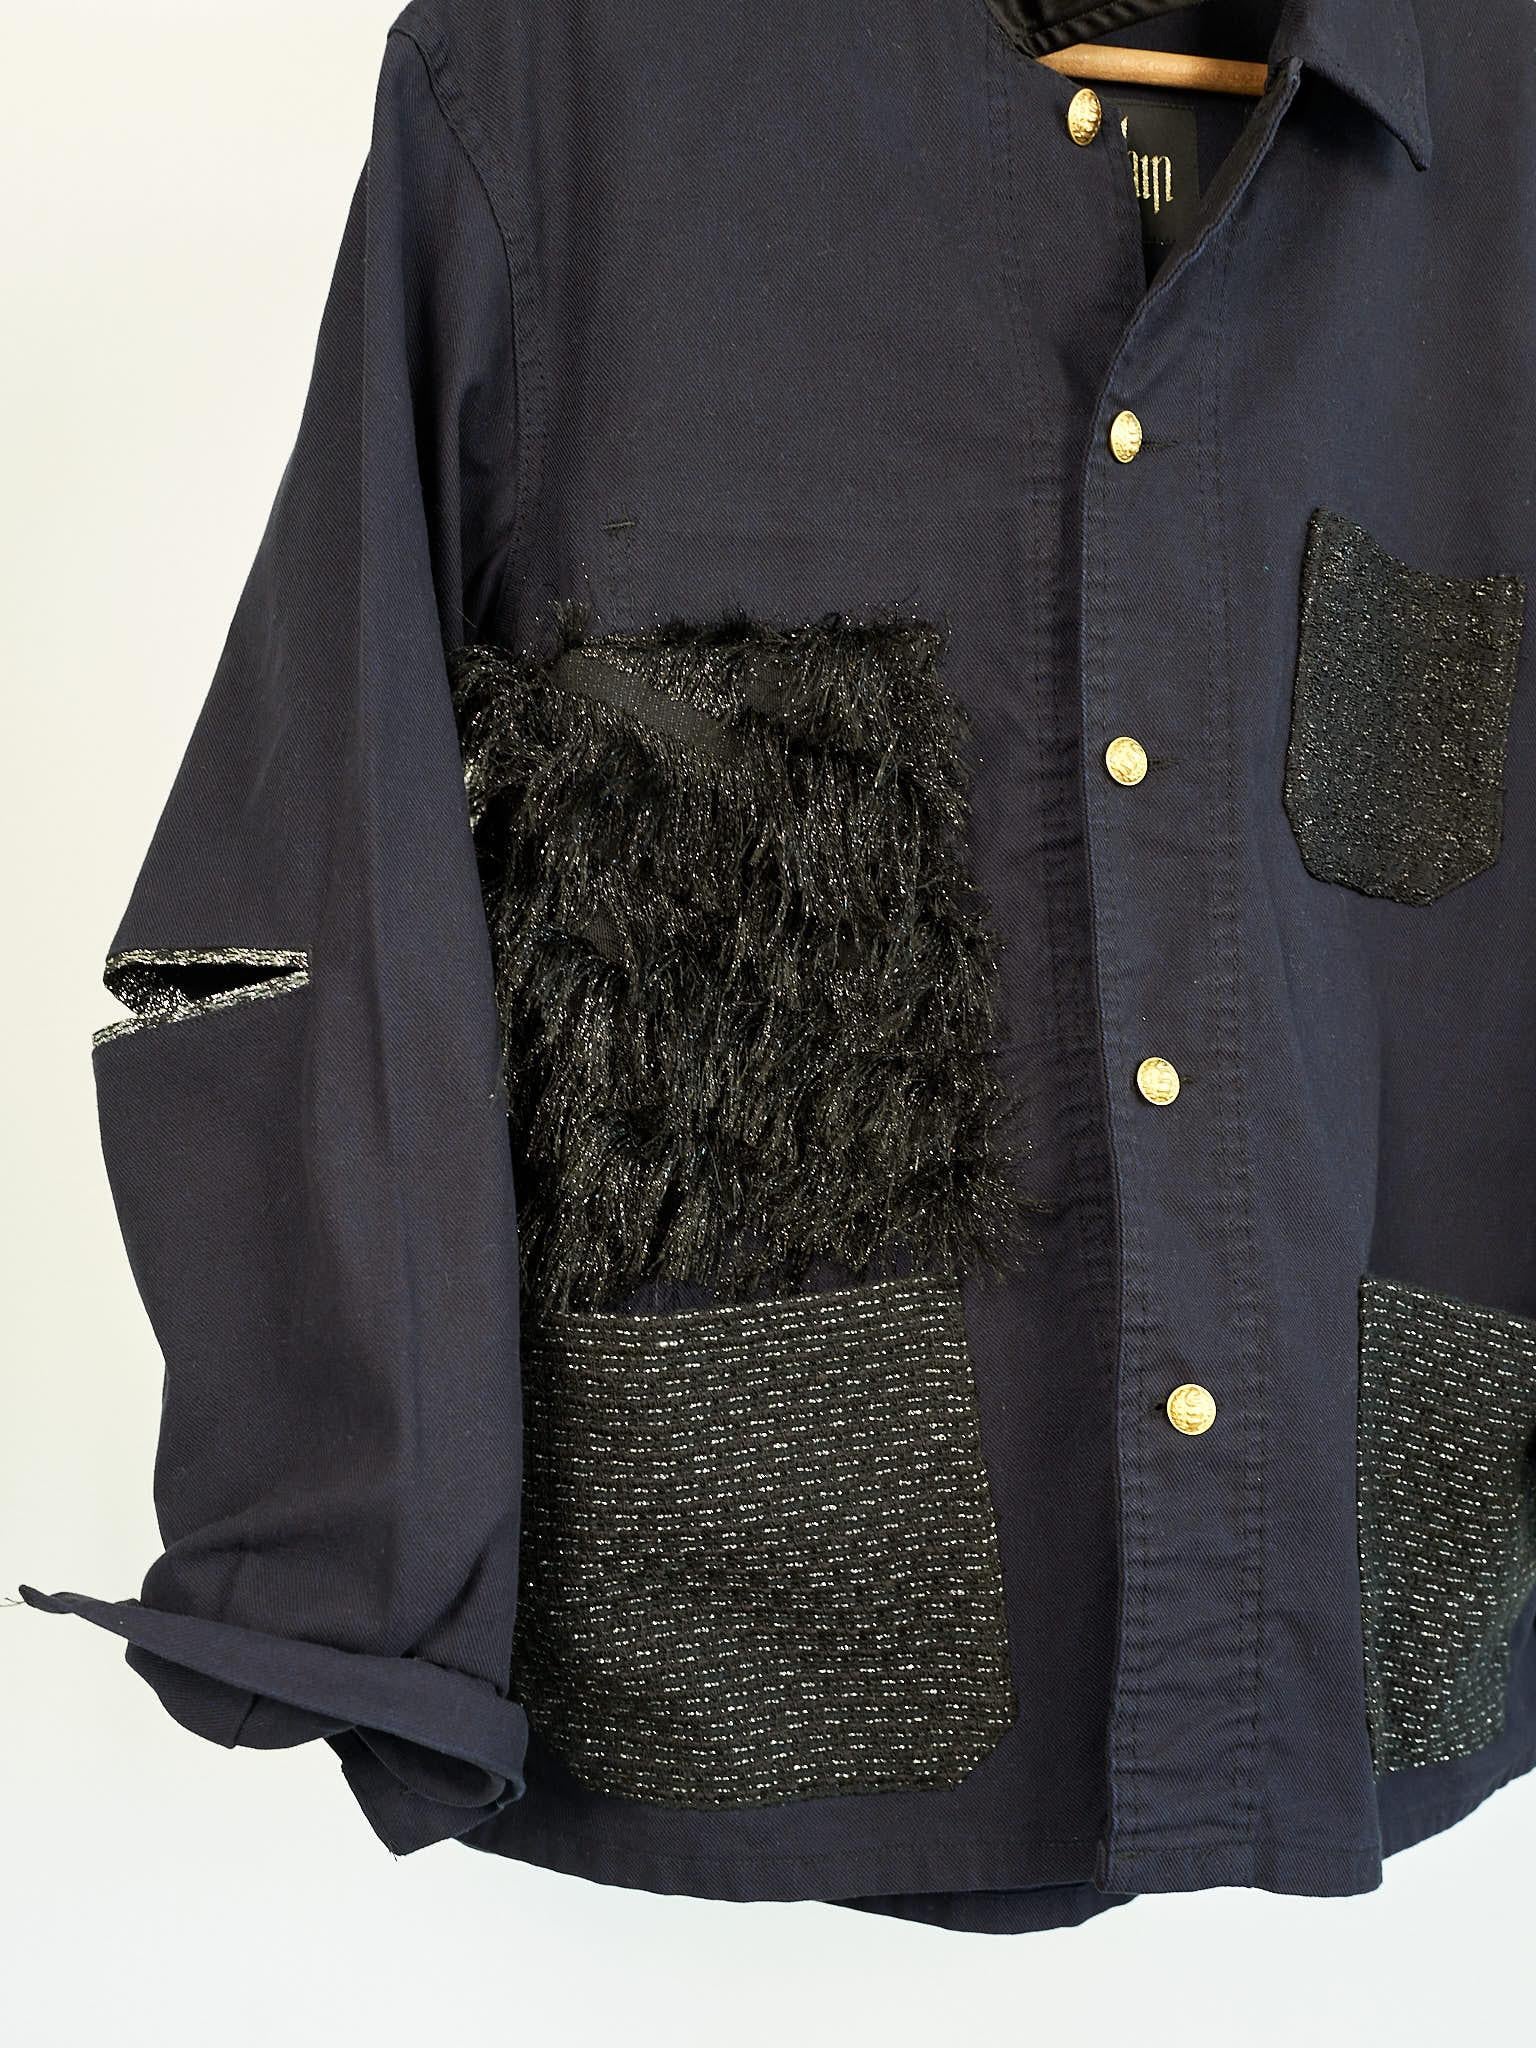 Tweed Jacket Original French Work Wear Vintage J Dauphin

Repurposed Vintage Jacket French Work Midnight Blue with Black Lurex Tweed Pockets, Black Fringes as a side patch. Open elbows.
Size: L / FR 42 / IT 44 / EU 40 / UK 12

Designer: J